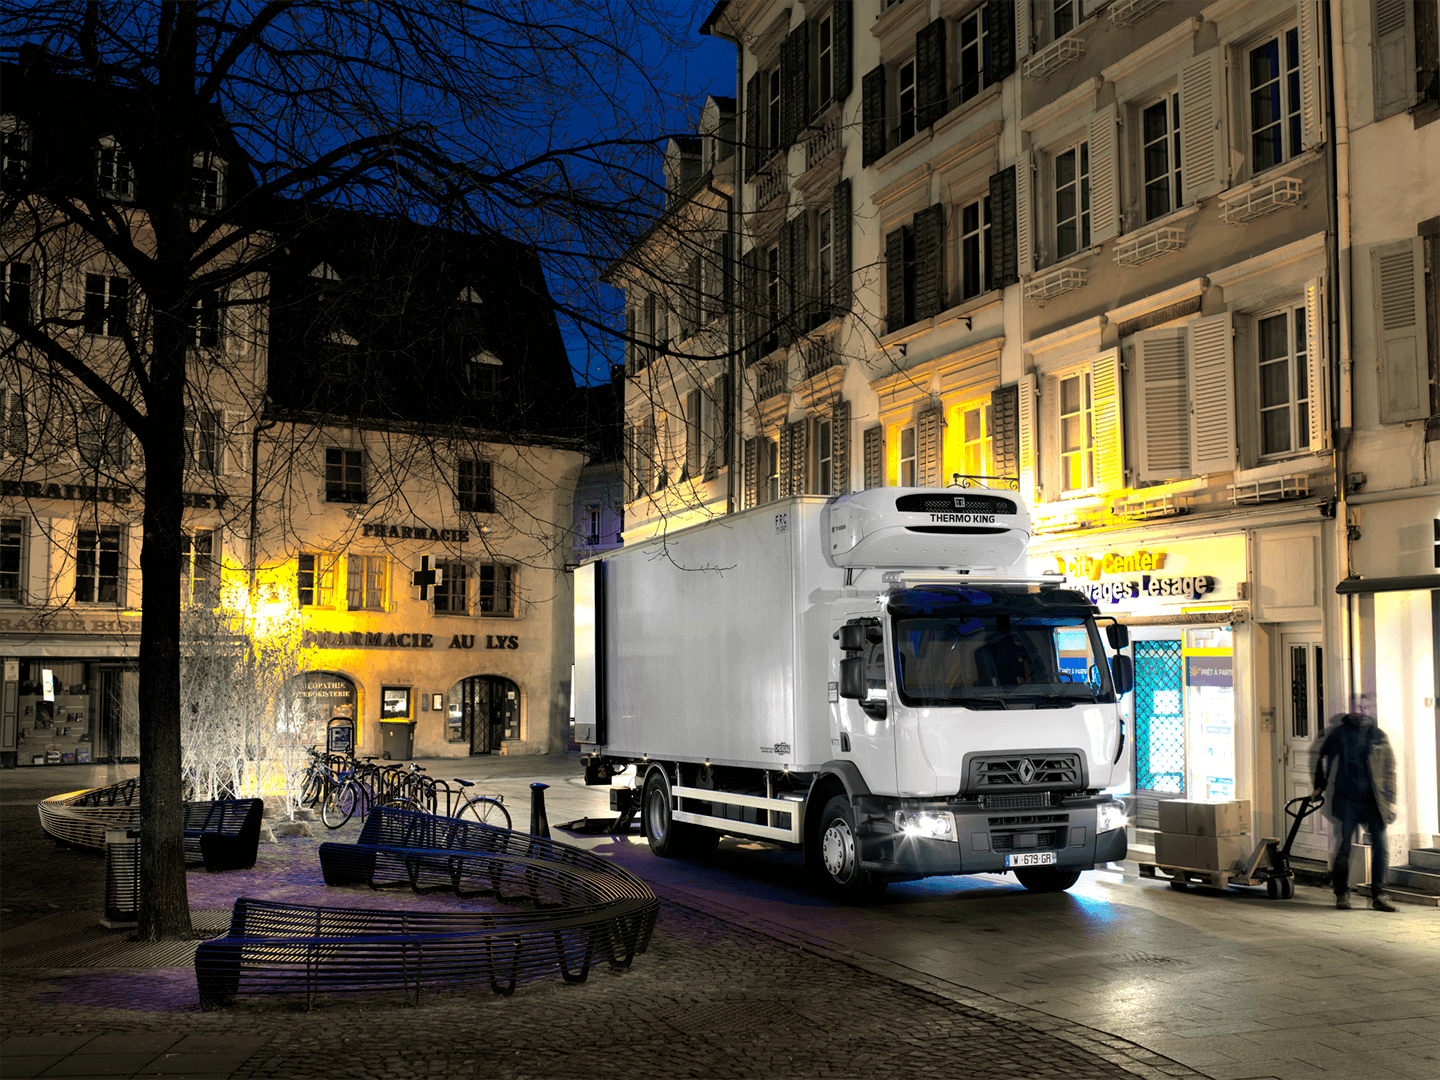 Renault Trucks – viel Leistungbei wenig Verbrauch